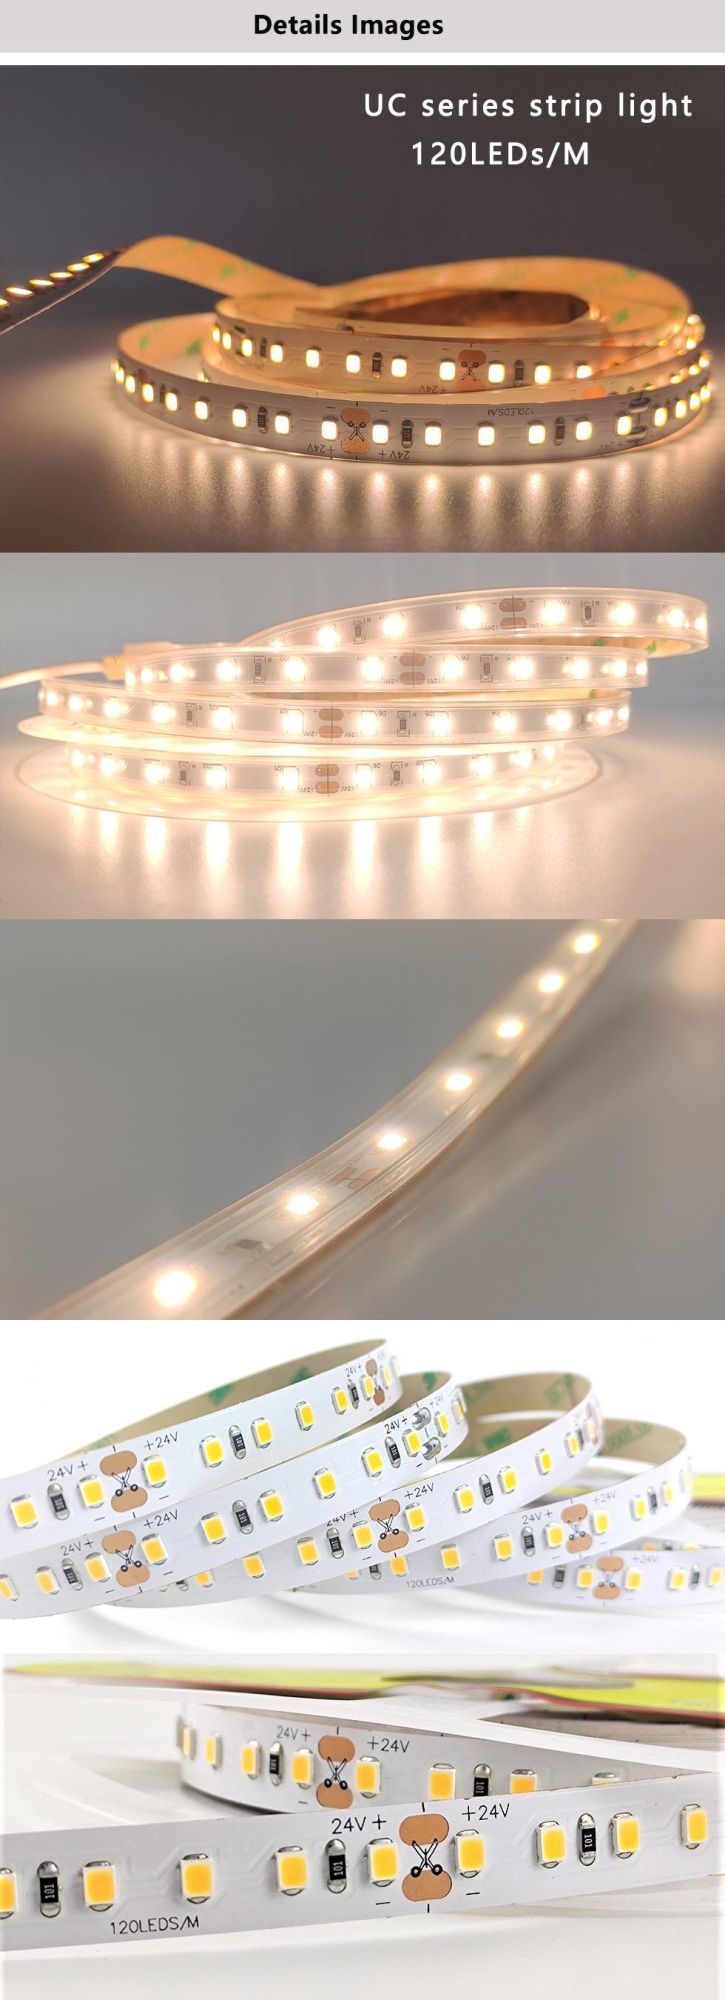 LED Strip Light for Home